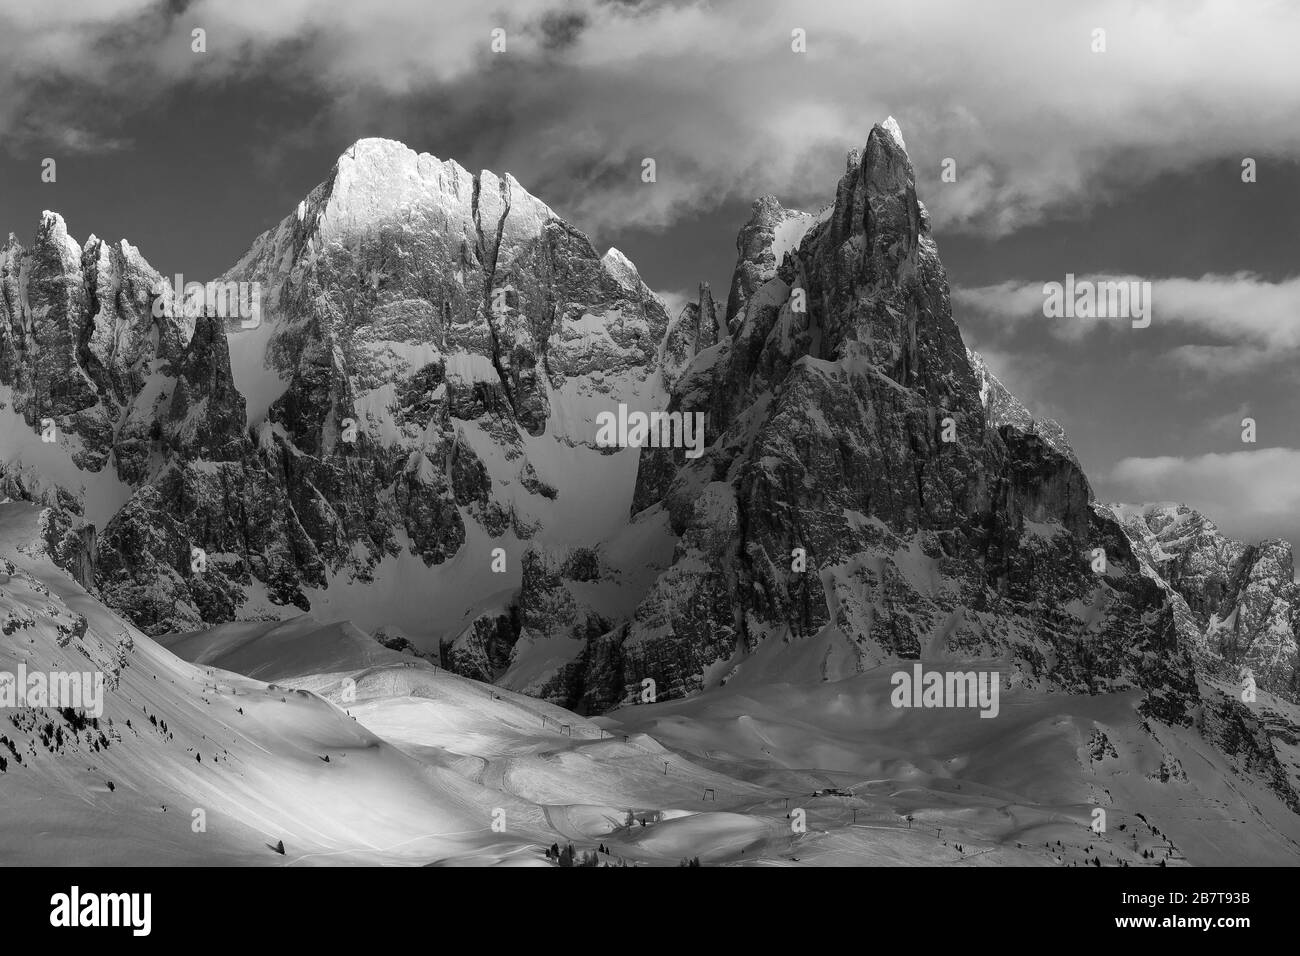 The Pale di San Martino mountain group. Cima Vezzana and Cimon della Pala peaks in winter season. The Dolomites of Trentino. Italian Alps. Europe. Stock Photo